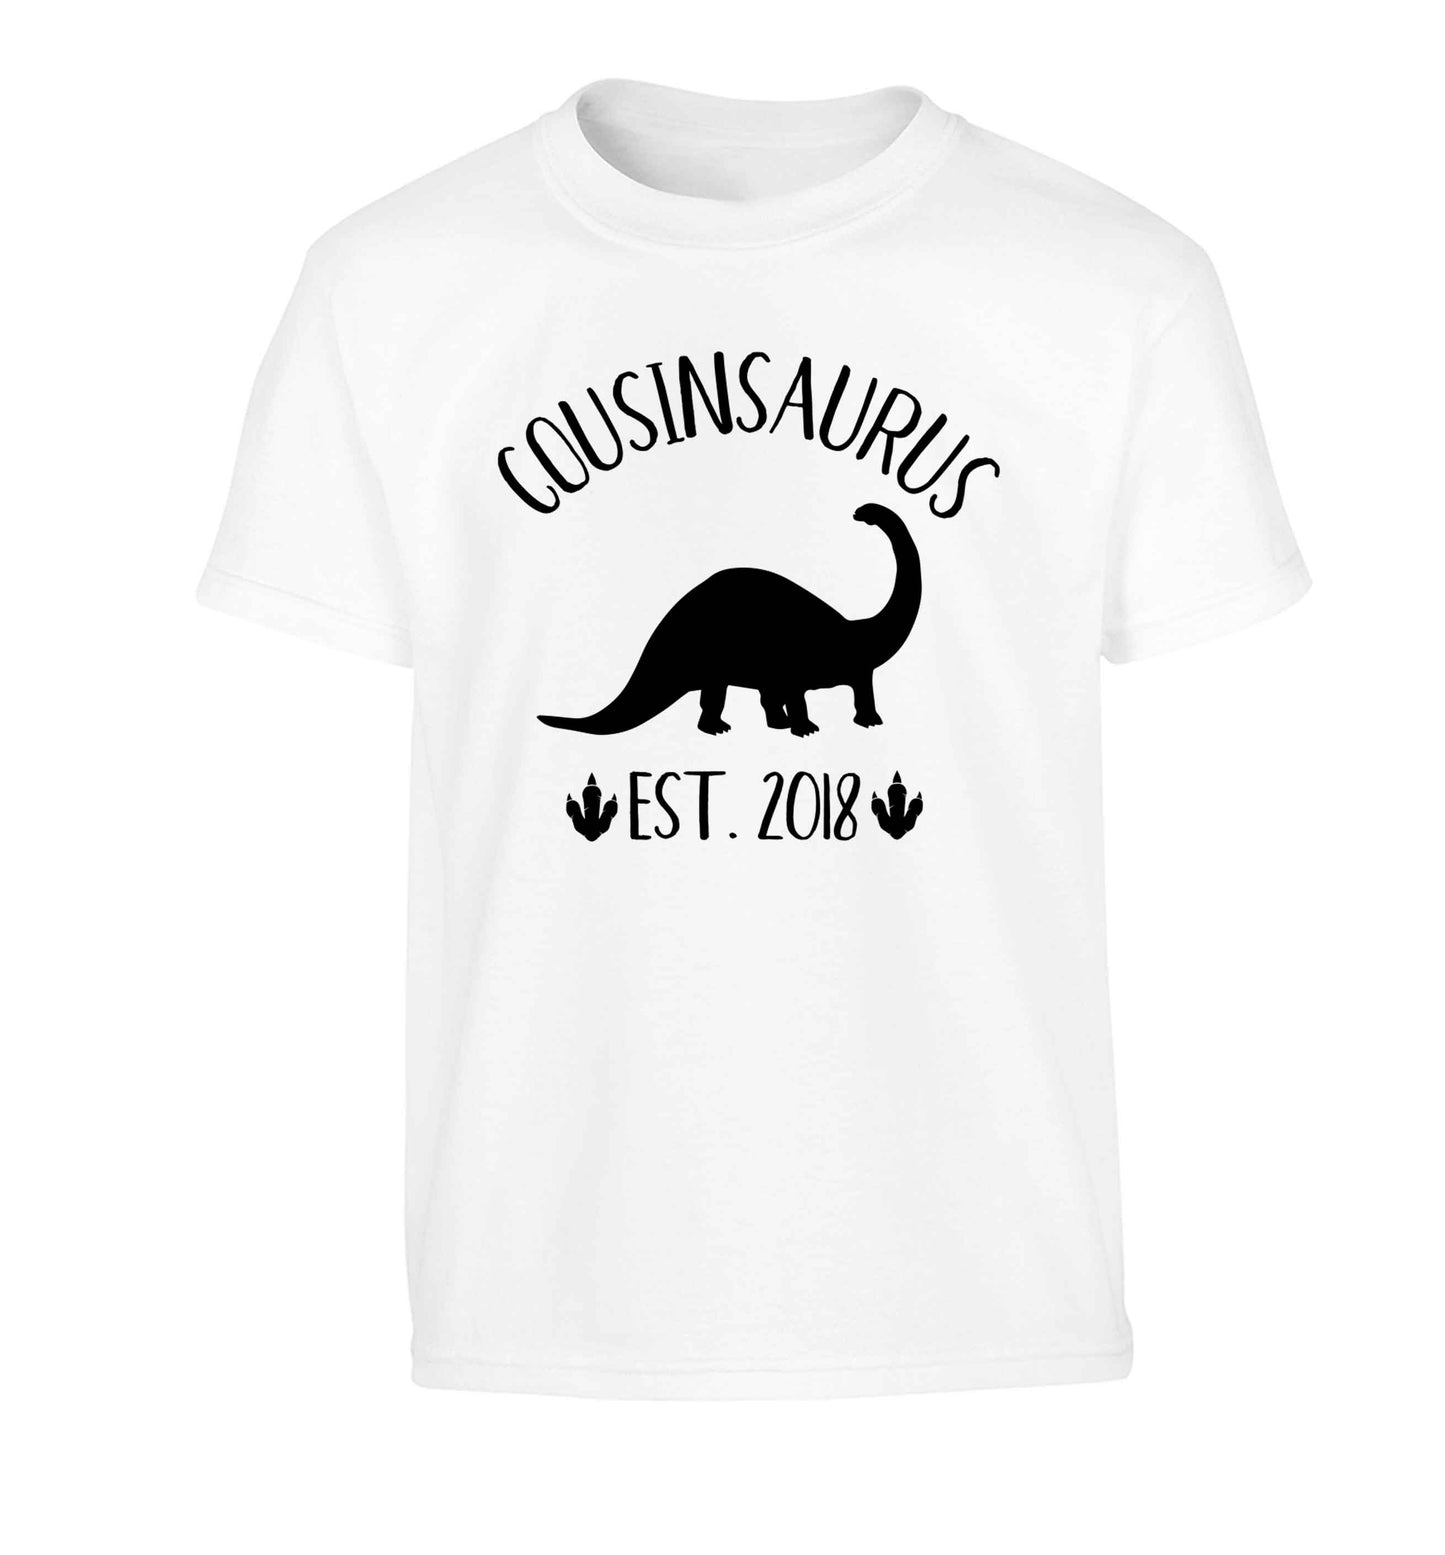 Personalised cousinsaurus since (custom date) Children's white Tshirt 12-13 Years